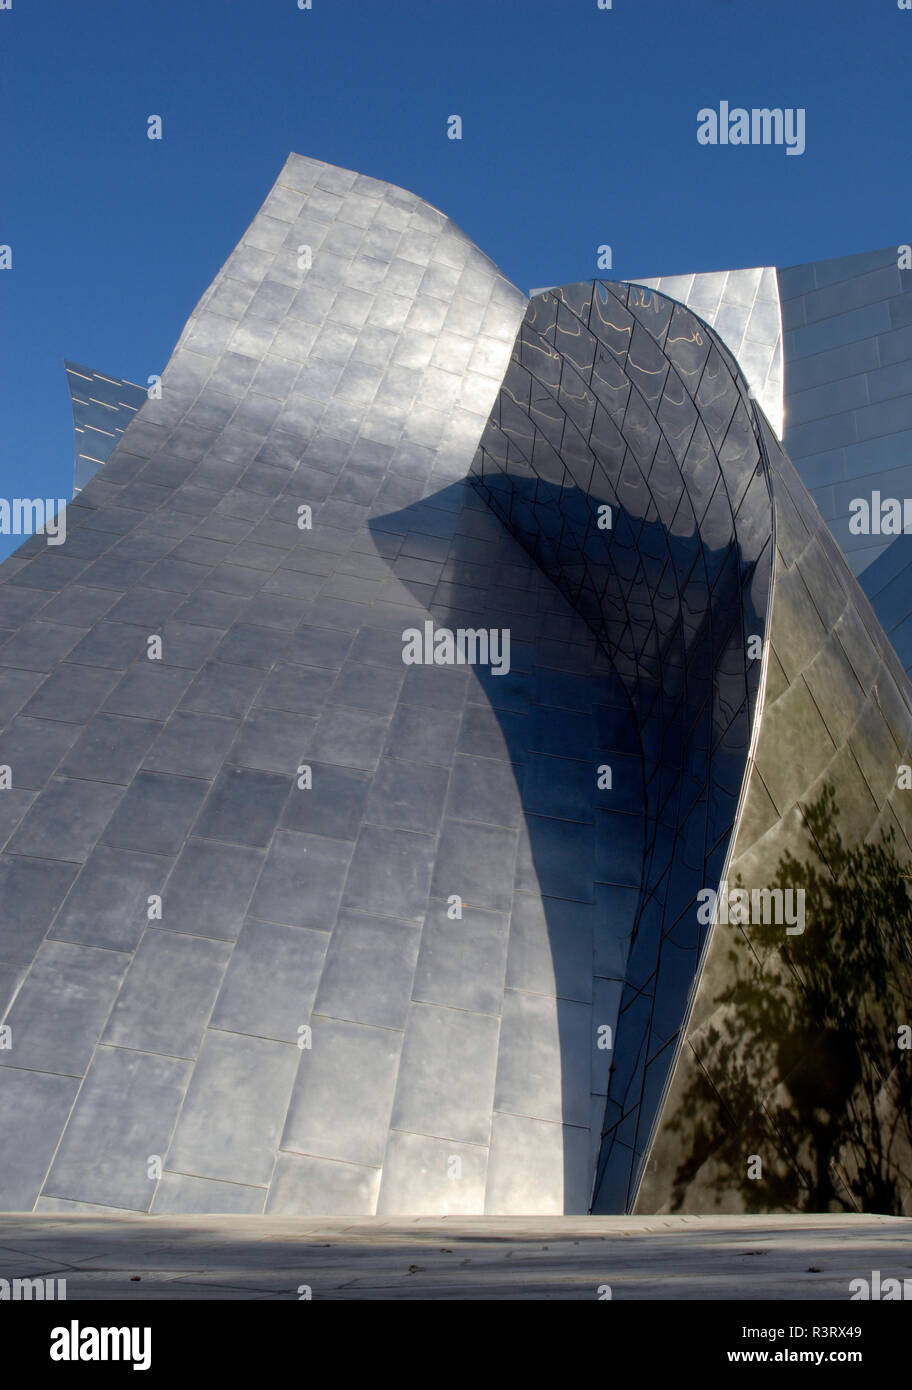 Detail der Edelstahl außen an der Walt Disney Concert Hall (eröffnet 2003) in Los Angeles, Kalifornien, von dem Architekten Frank Gehry entworfen. Stockfoto